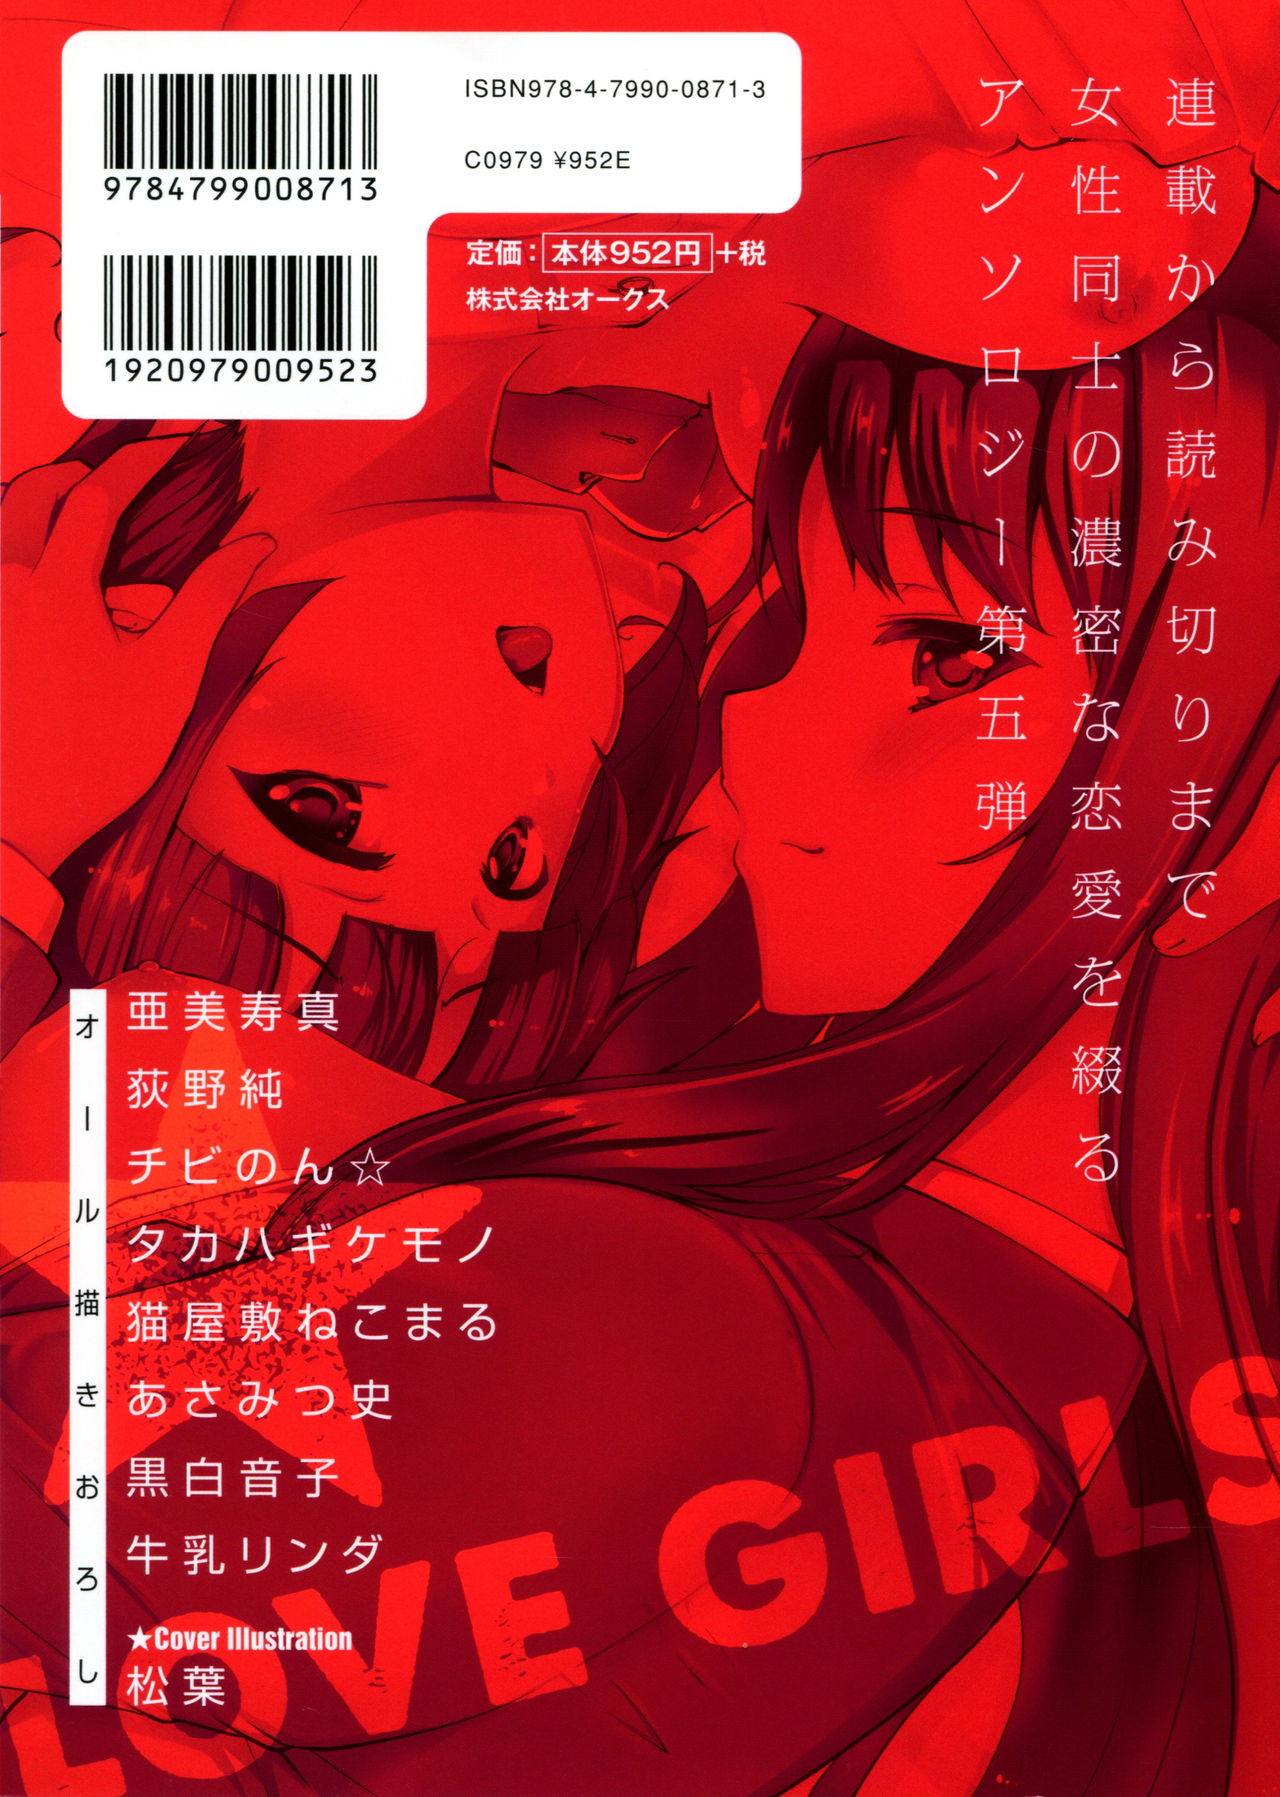 [Anthology] L Girls -Love Girls- 05 [アンソロジー] L ガールズ-Love Girls-05